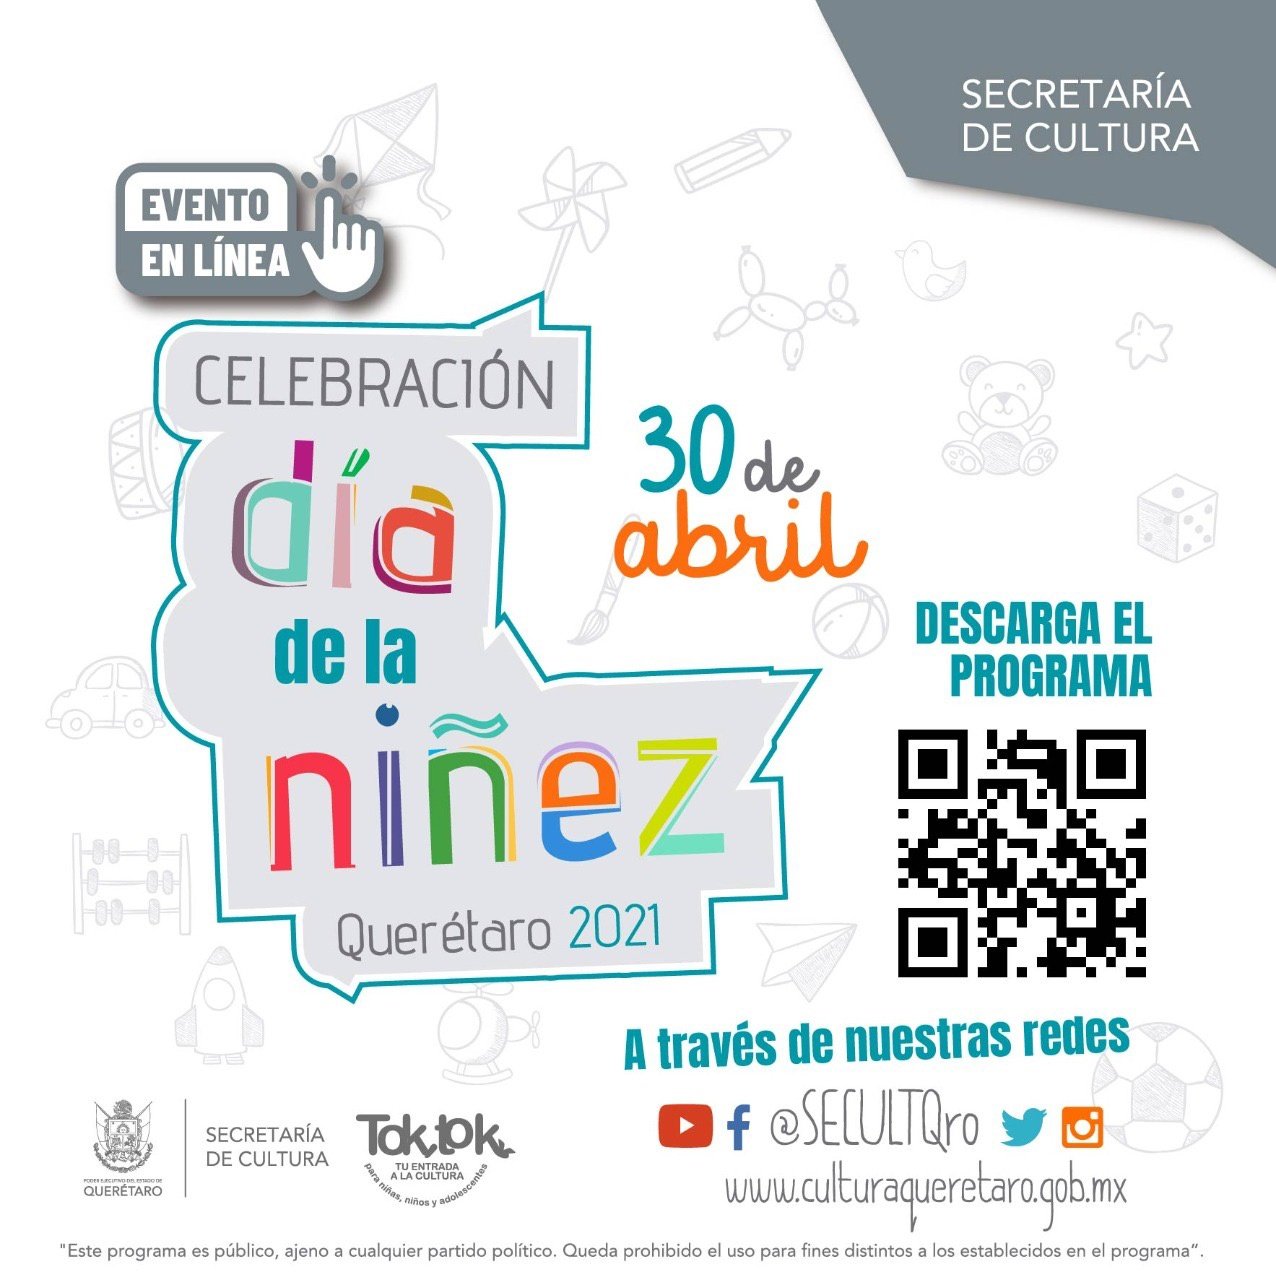 Celebrarán el Día de la niñez Querétaro 2021 de manera virtual